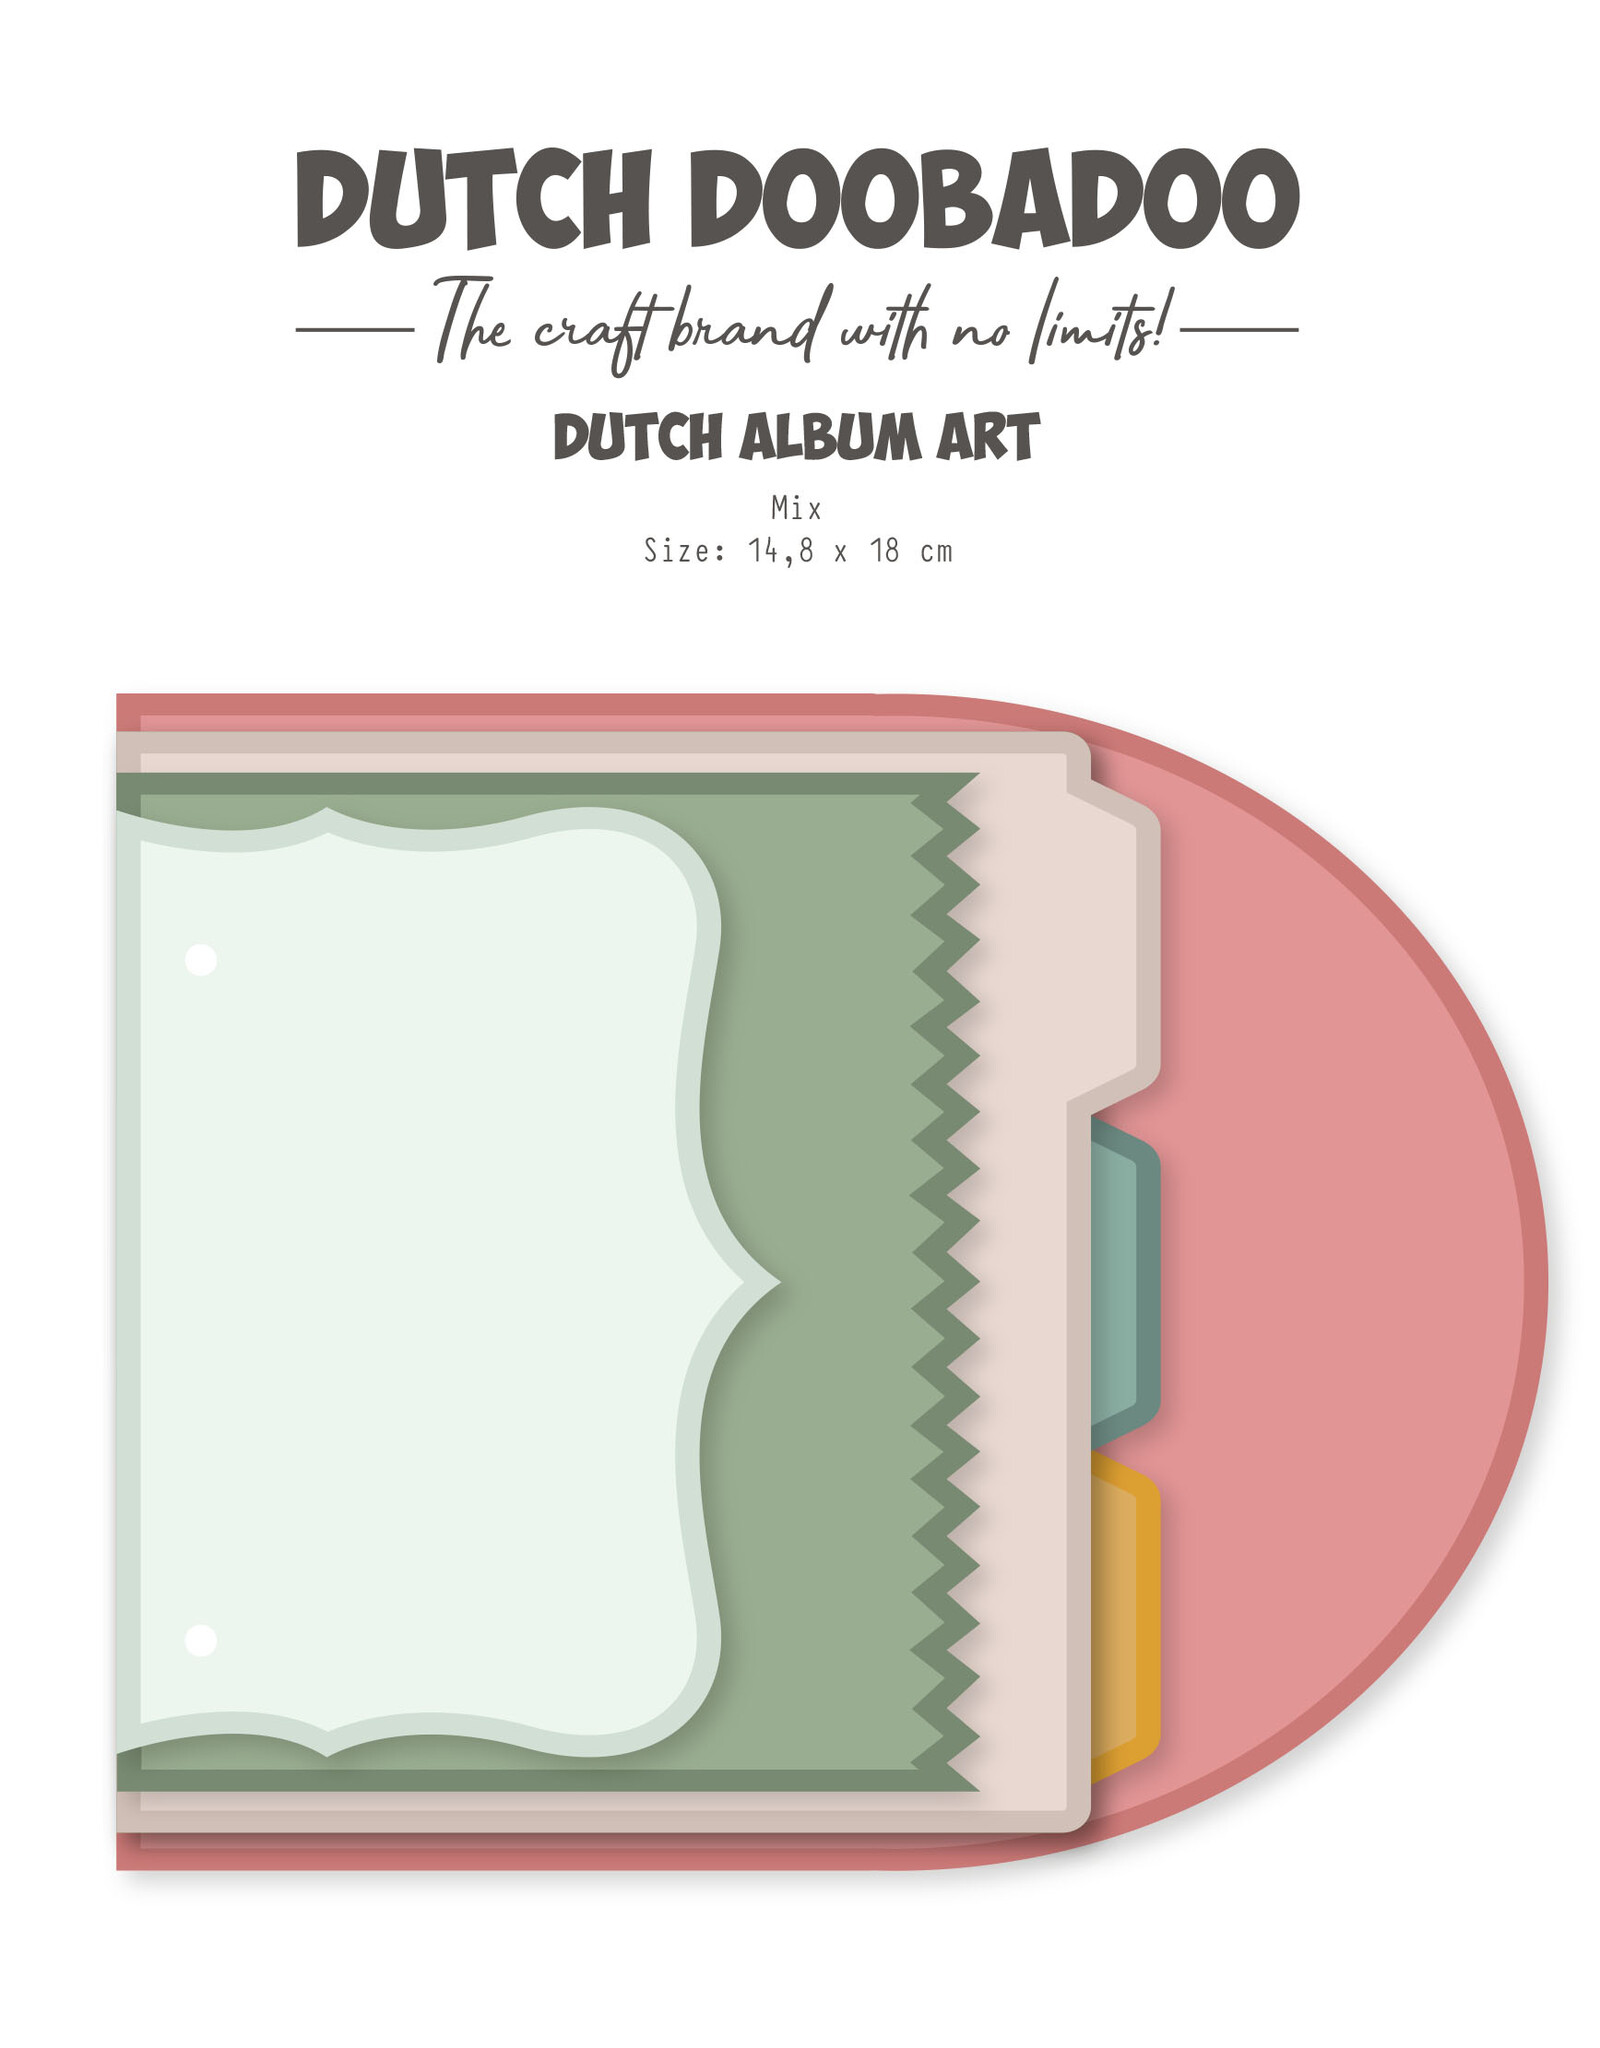 Dutch Doobadoo DDBD Album-Art Mix 6 set